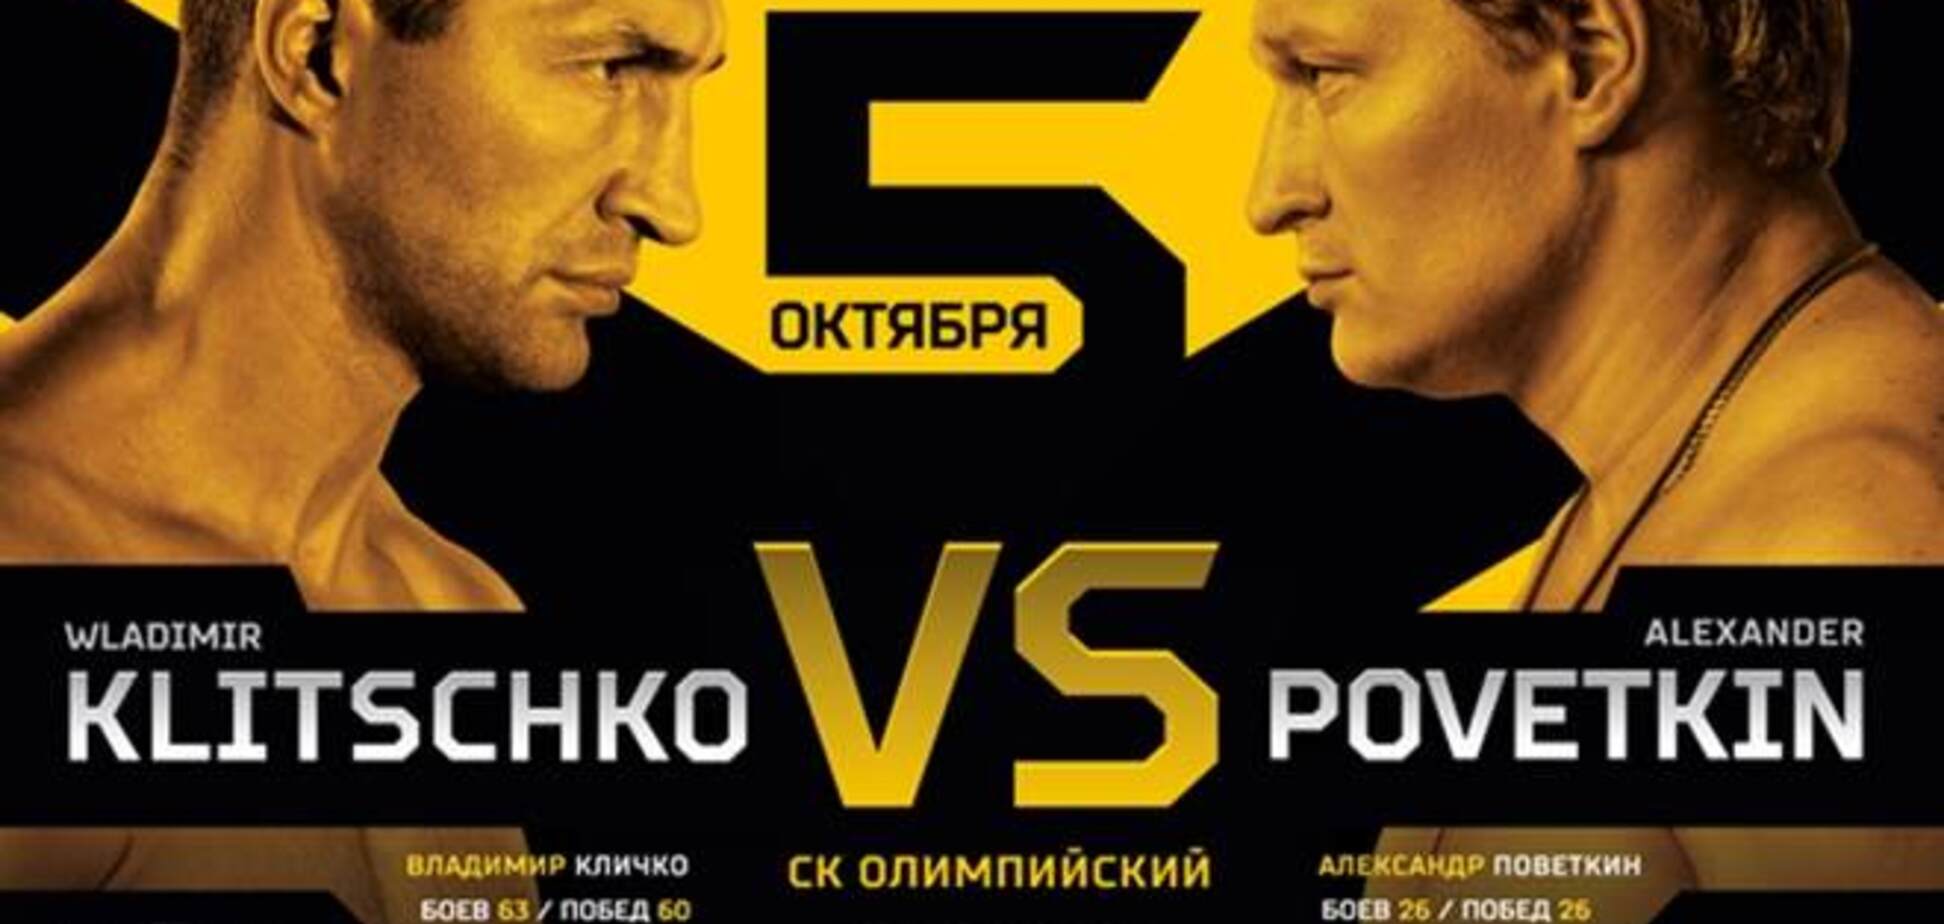 В Москве уже продают билеты на бой Кличко – Поветкин